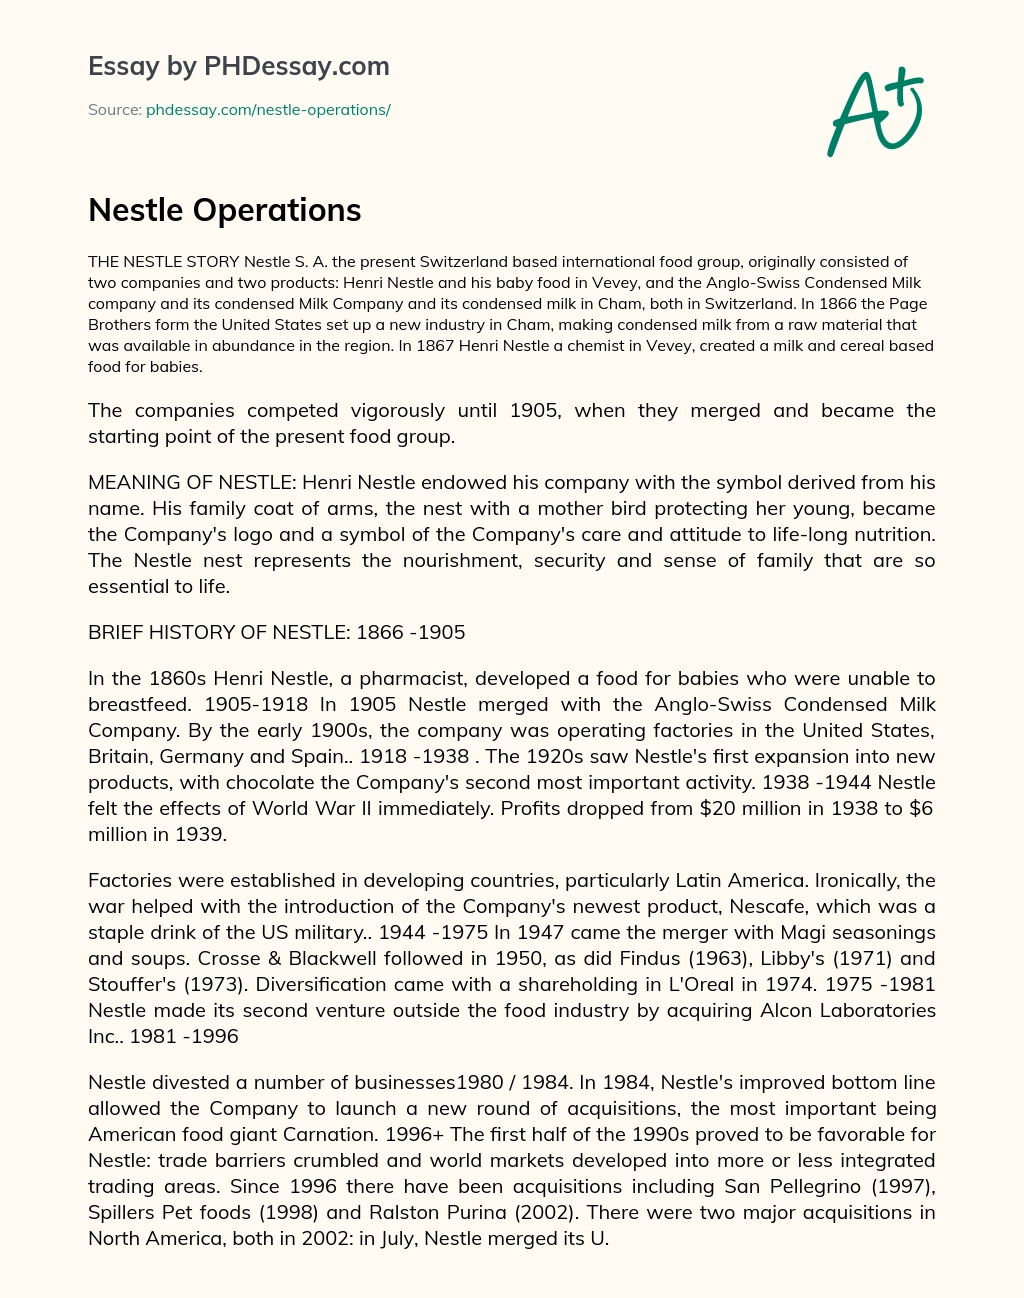 Nestle Operations essay